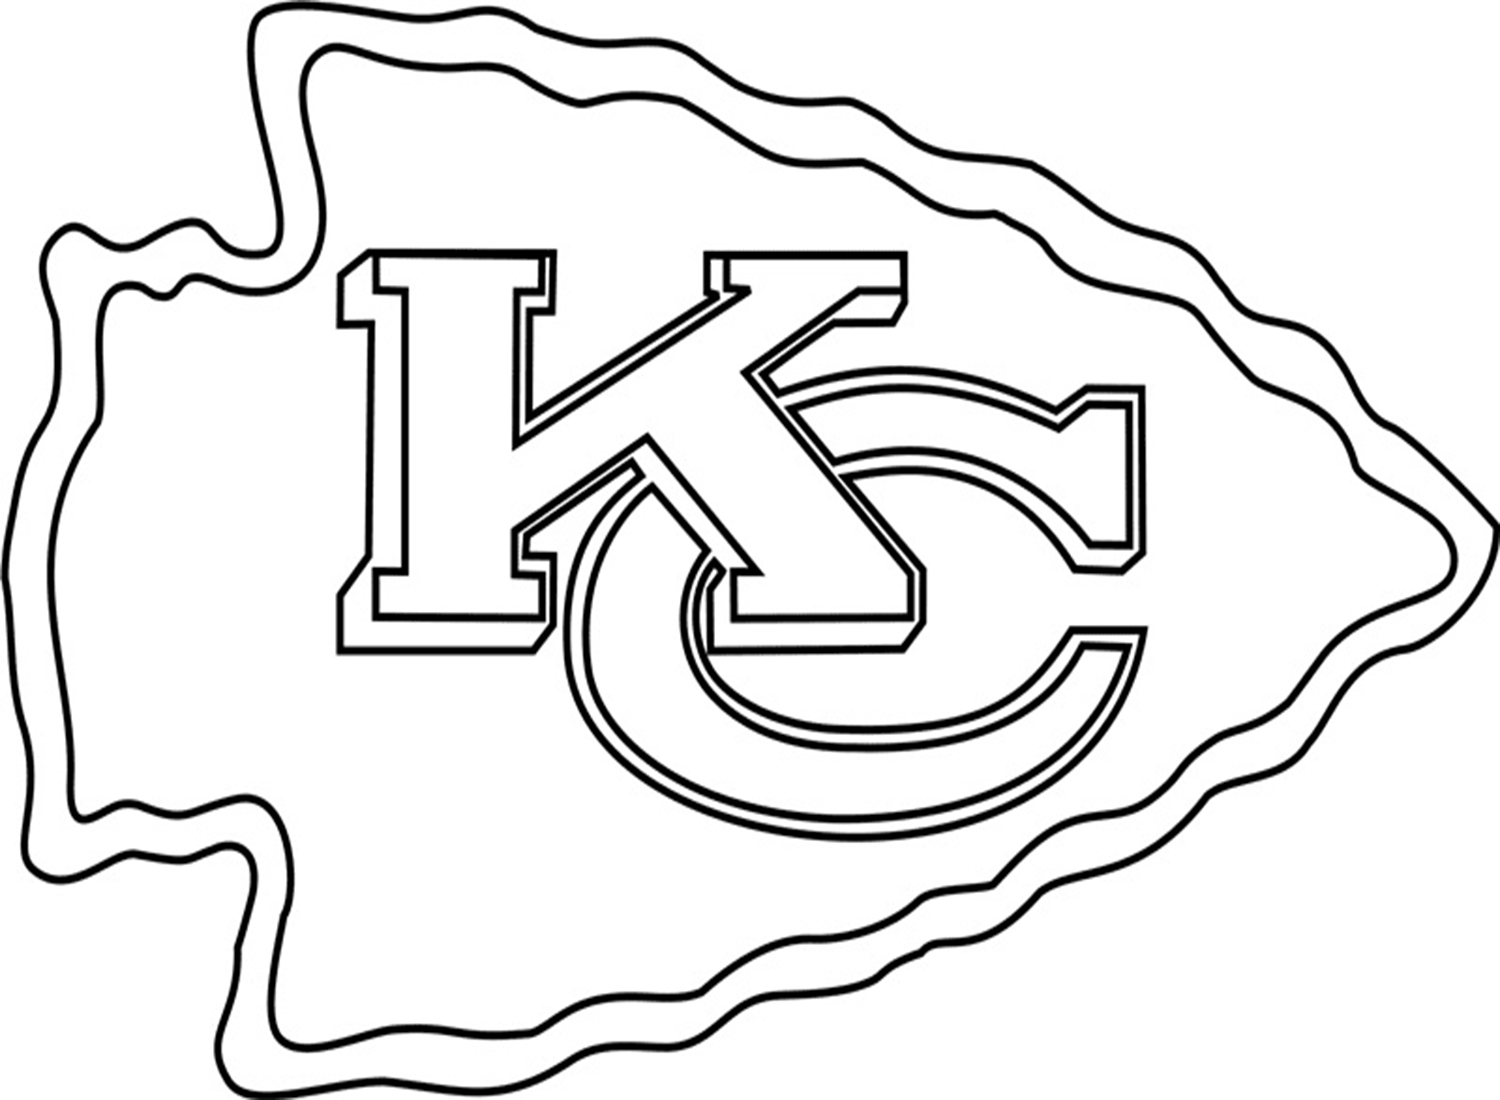 شعار كانساس سيتي تشيفز من كانساس سيتي تشيفز